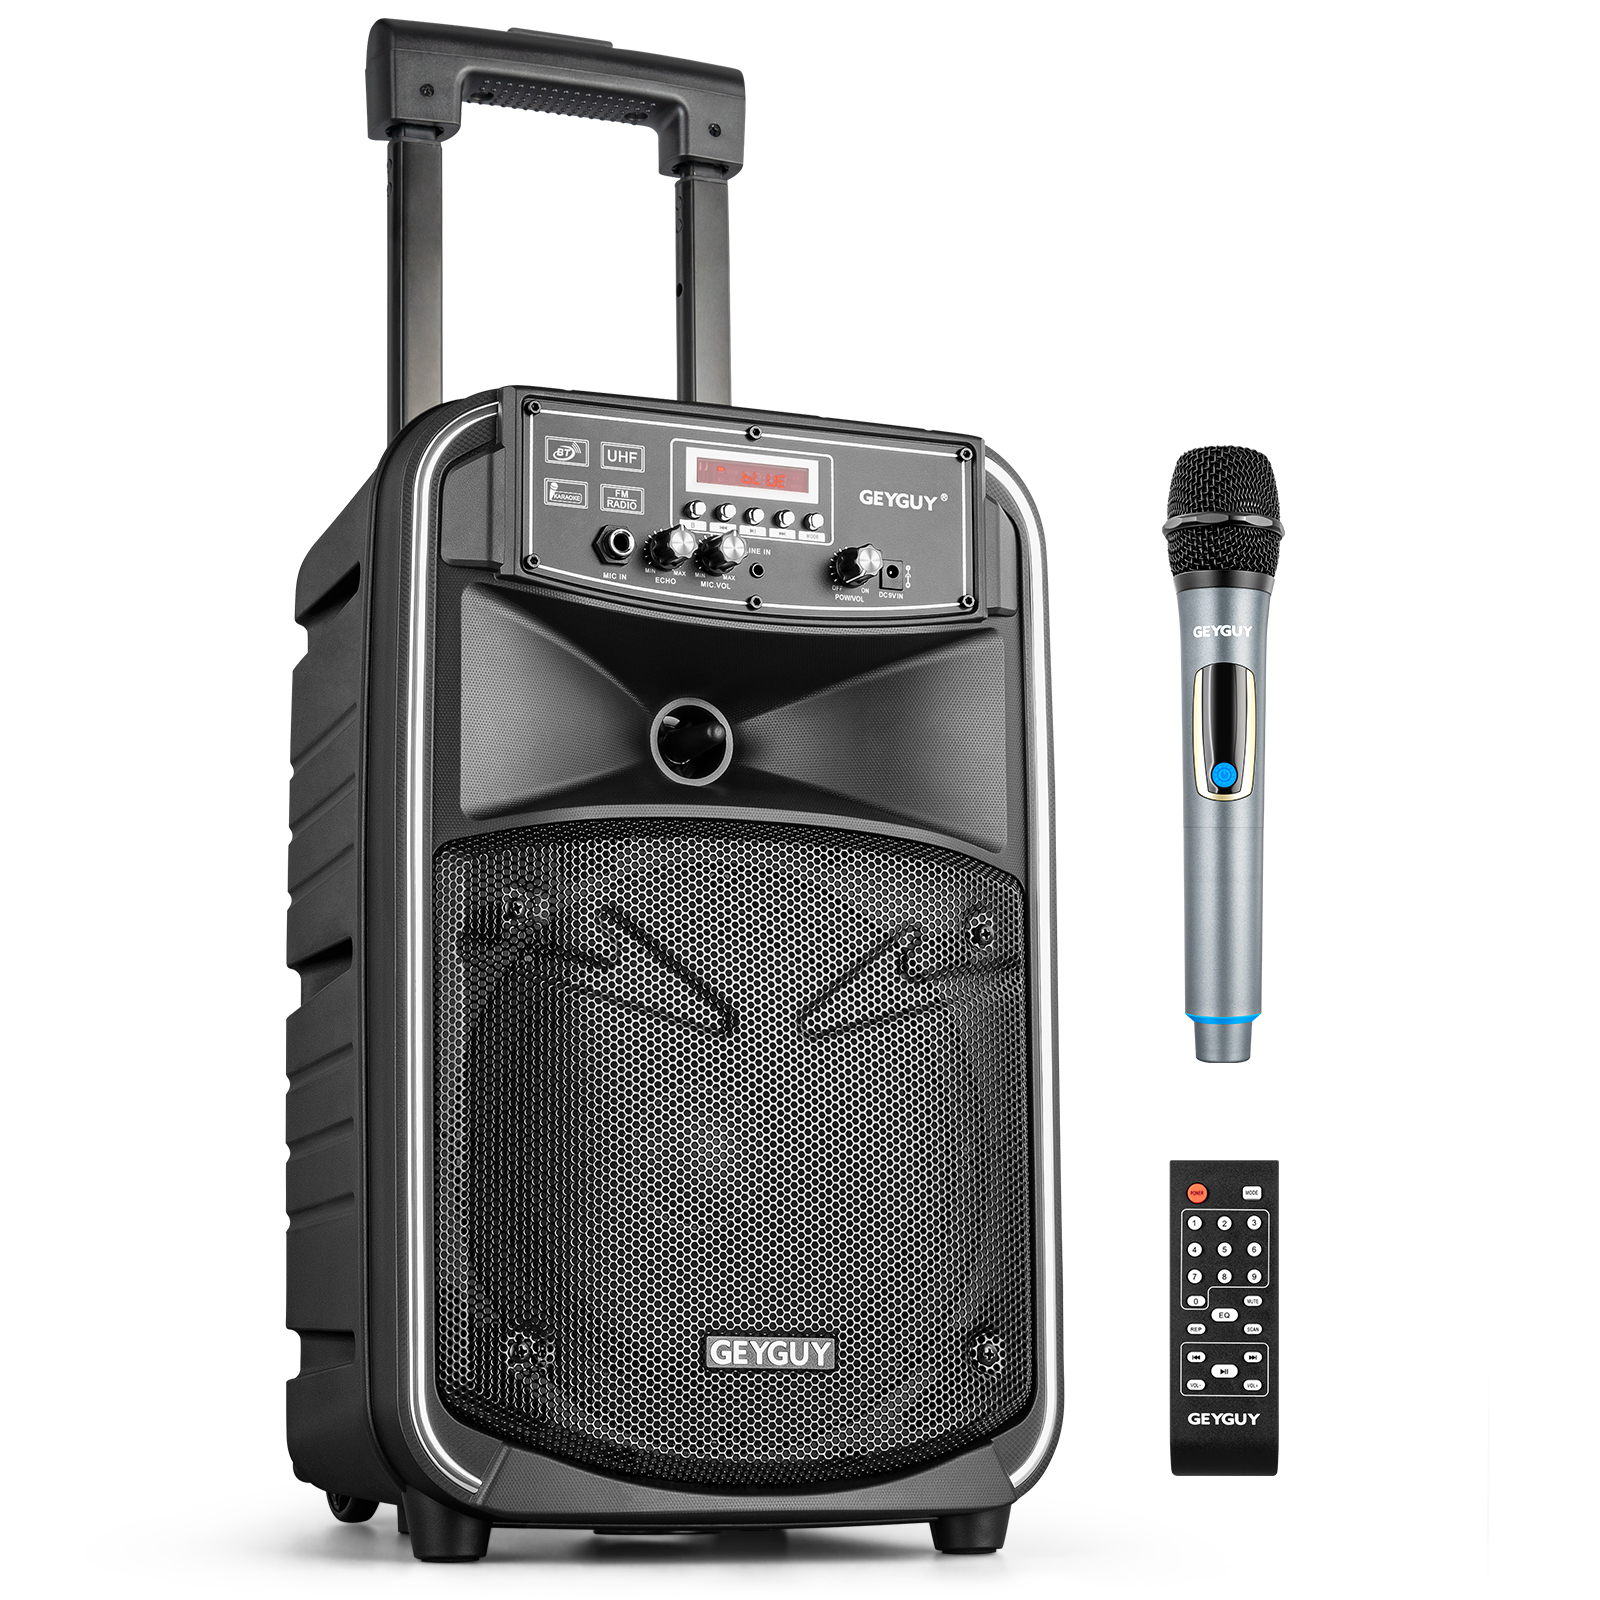 GTSK8-1 Portable Karaoke Machine With One Wireless Micophone